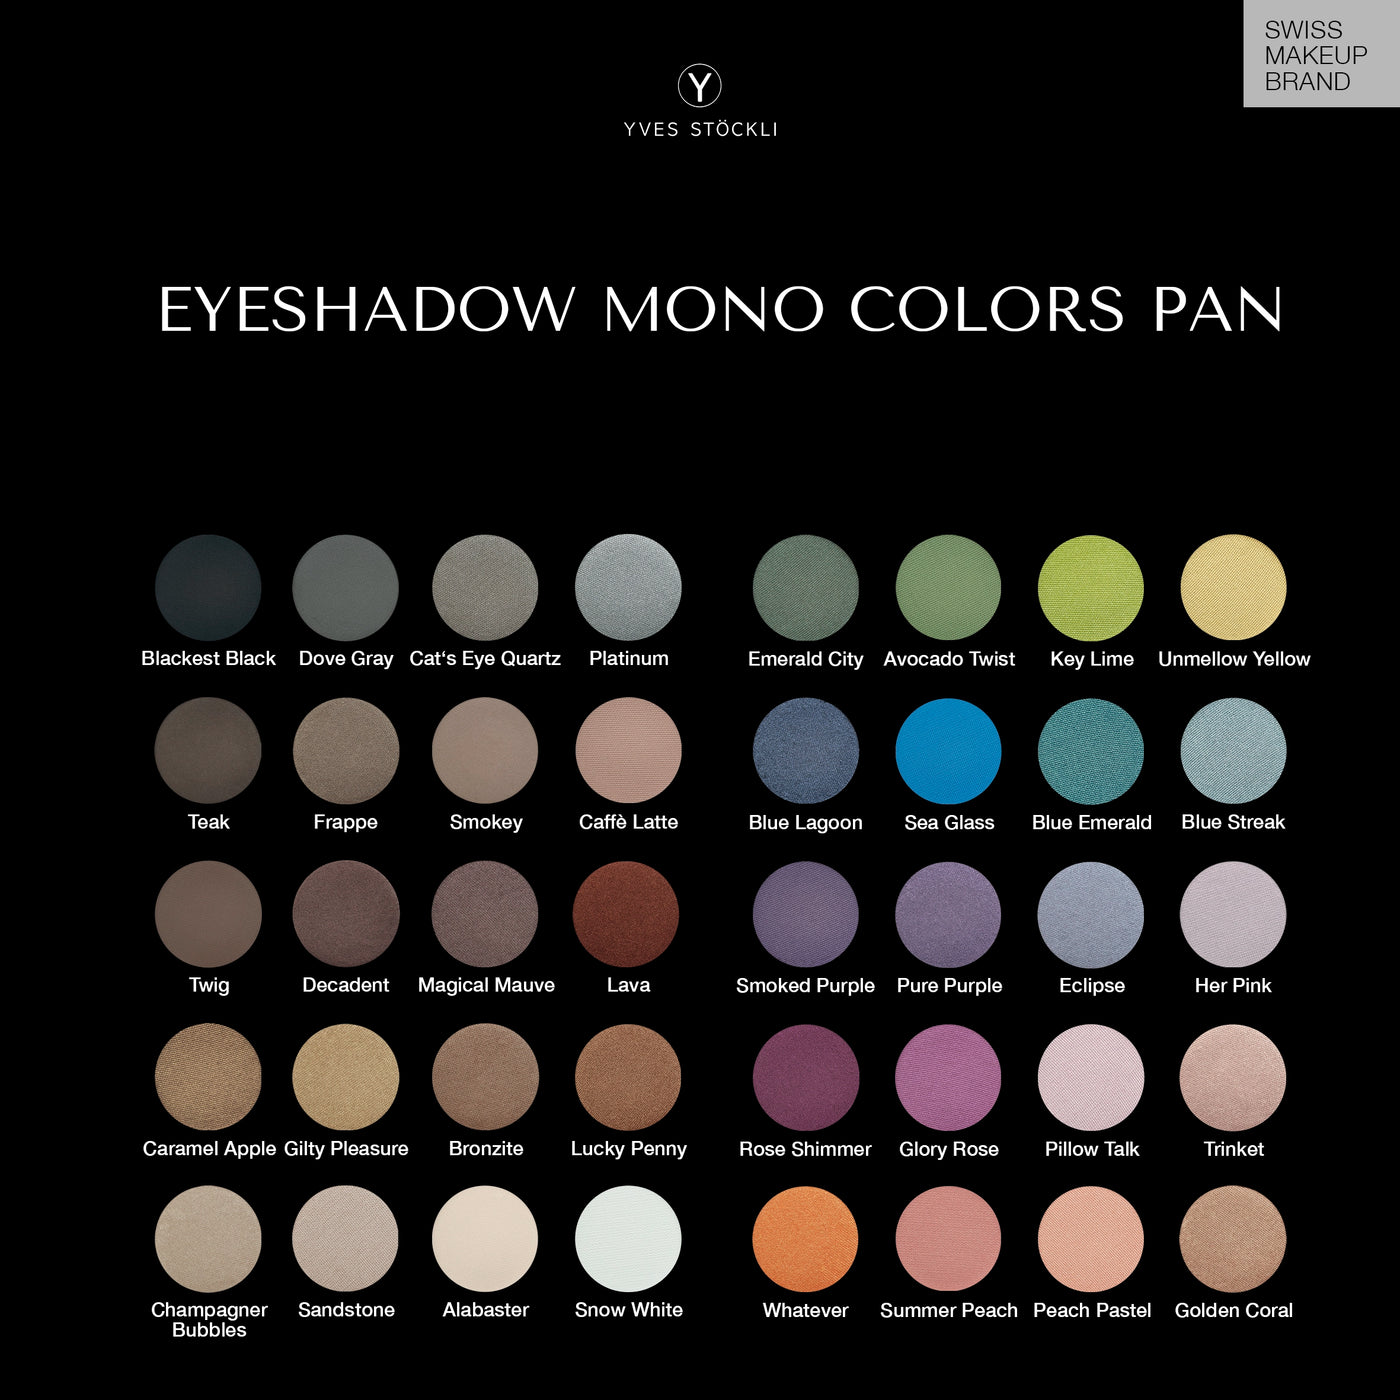 Rose Shimmer - Eyeshadow Pan